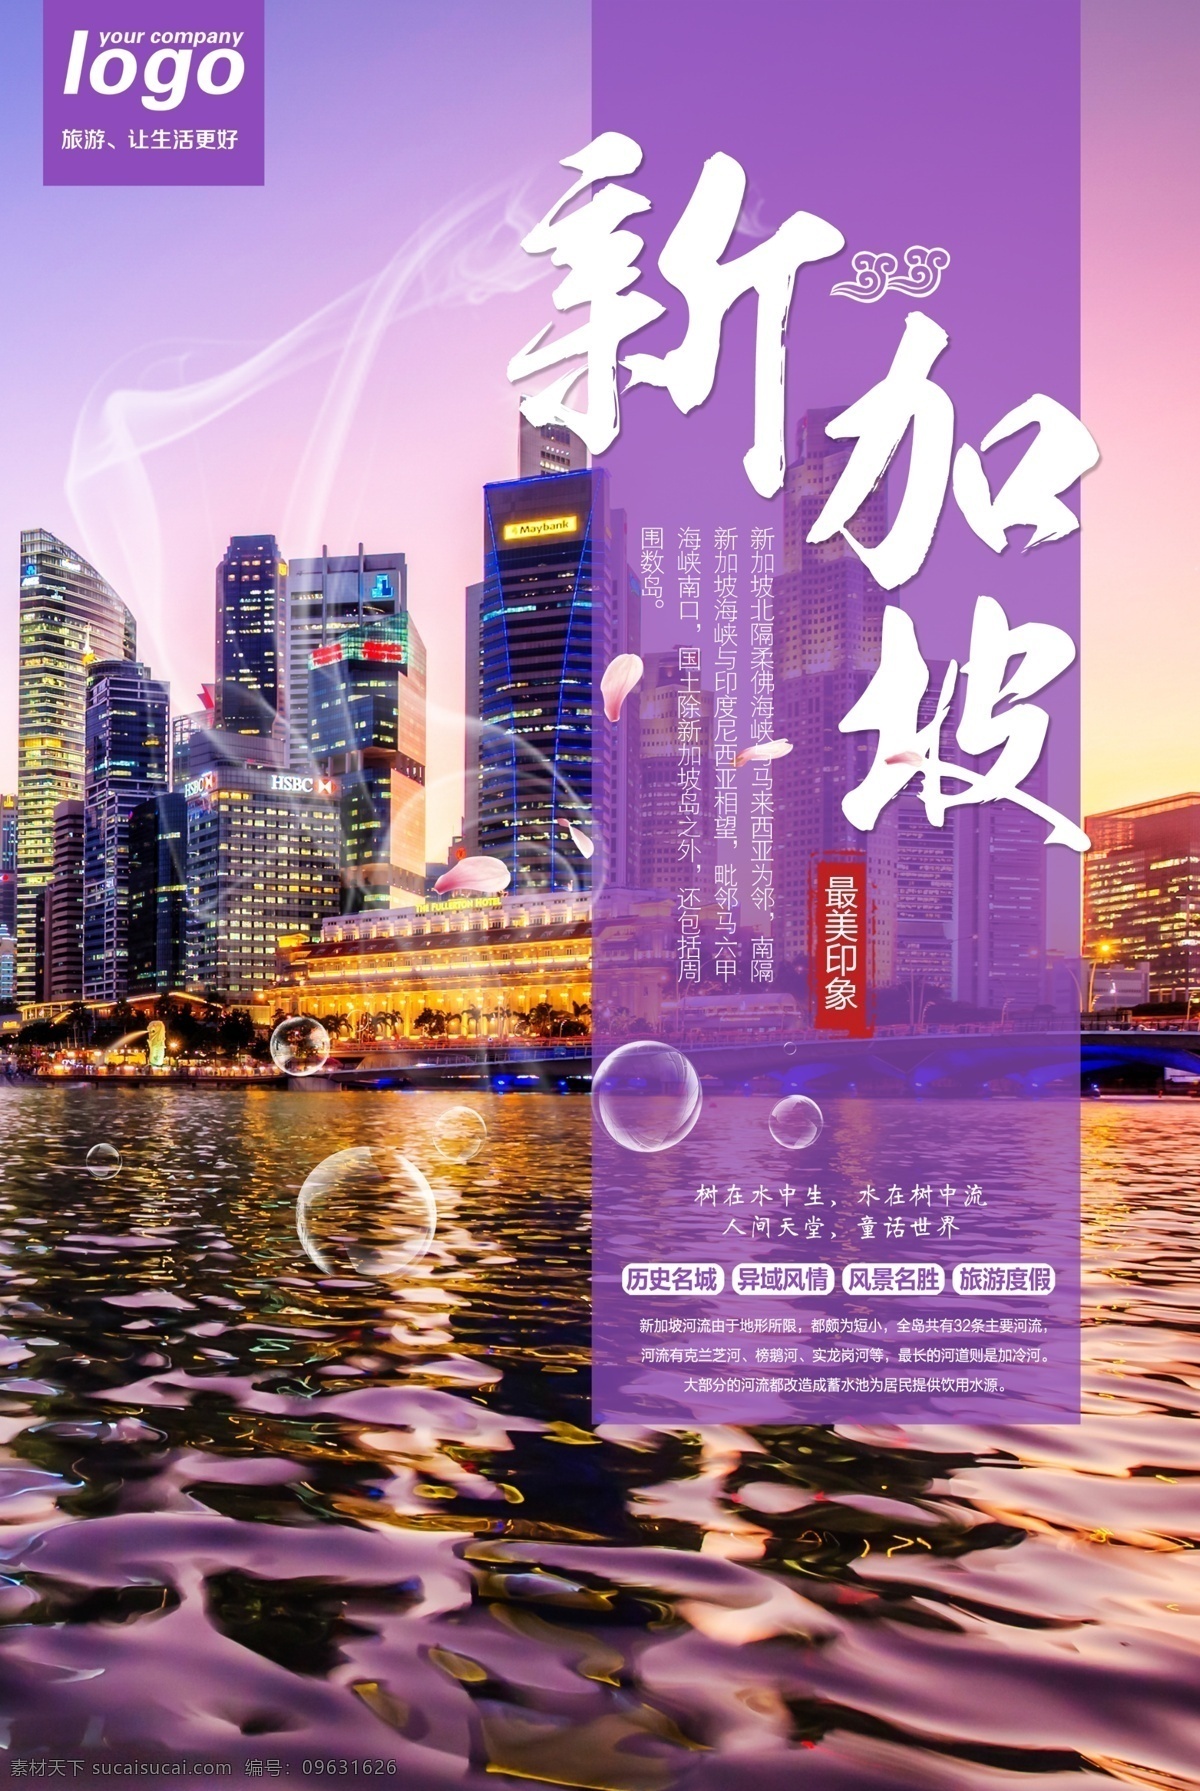 新加坡 旅游景点 宣传海报 旅游 景点 宣传 海报 景区